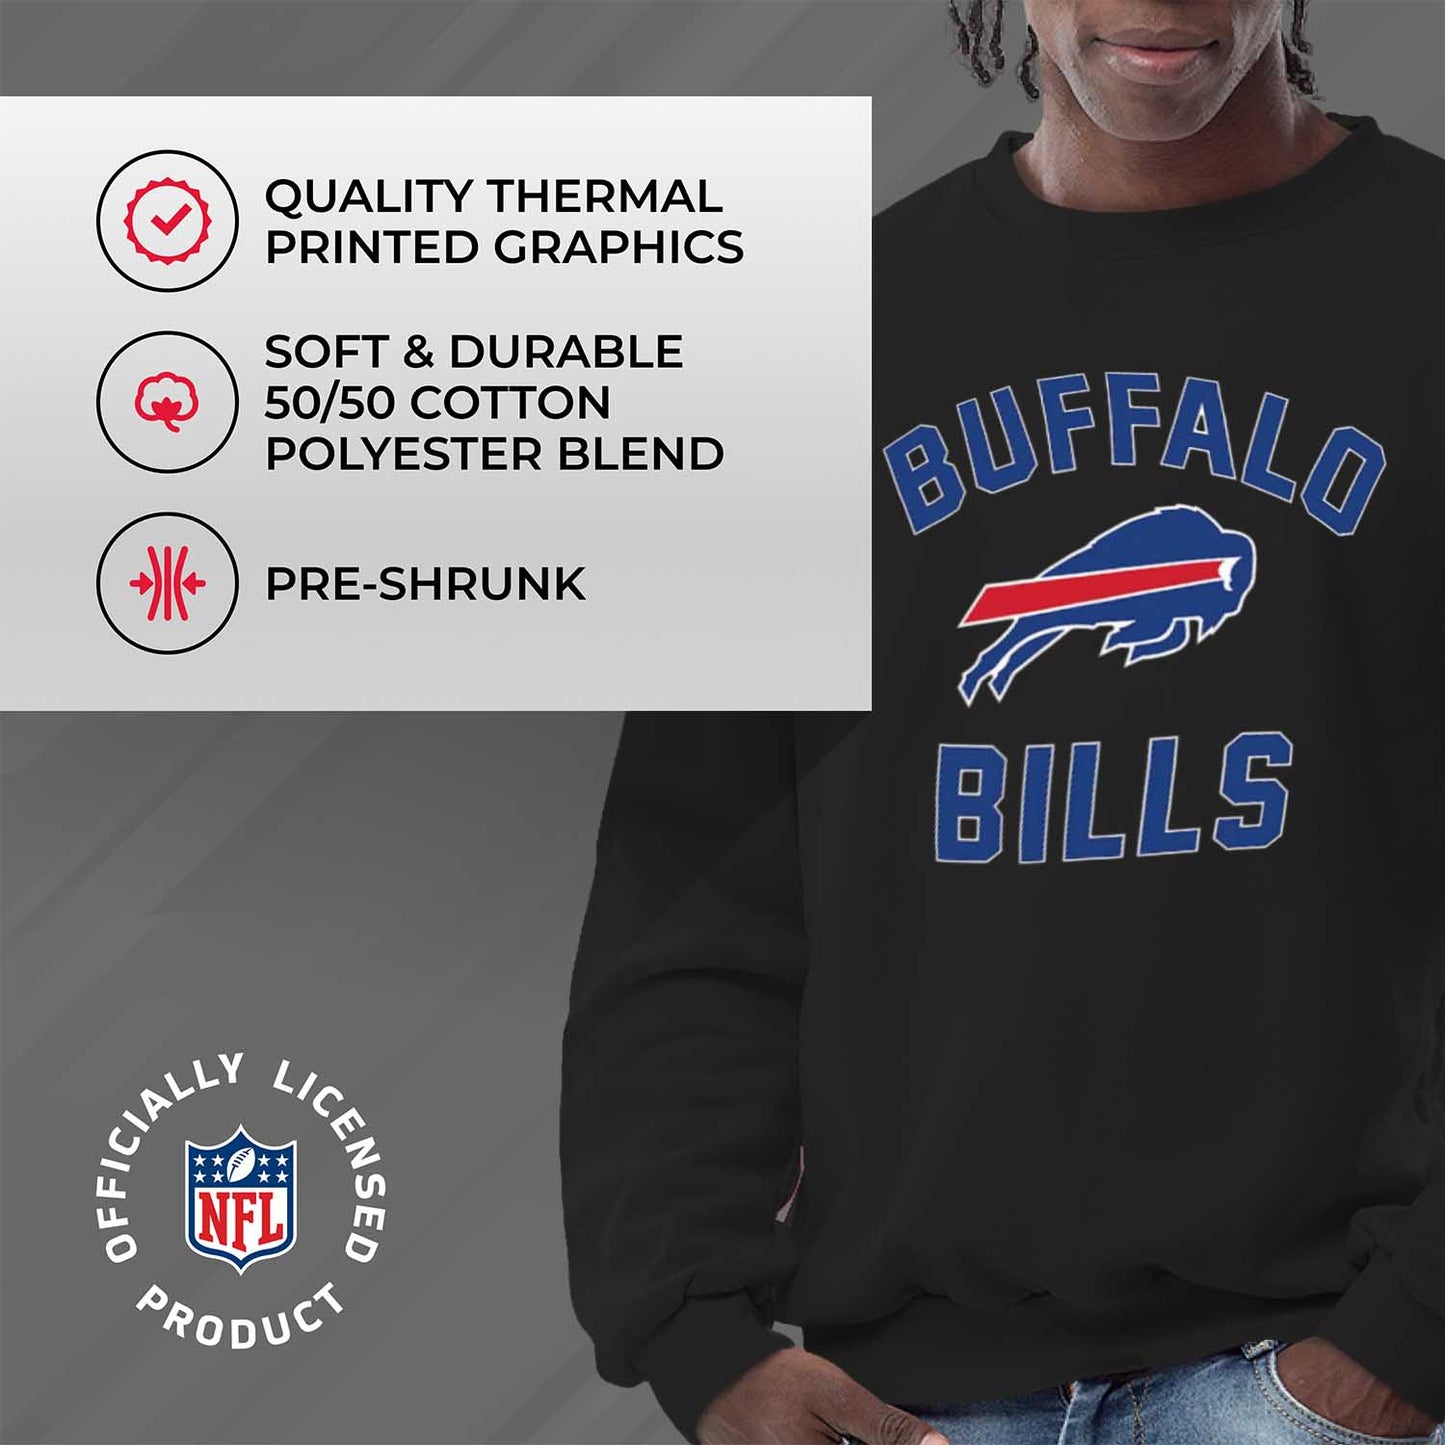 Buffalo Bills NFL Adult Gameday Football Crewneck Sweatshirt - Black